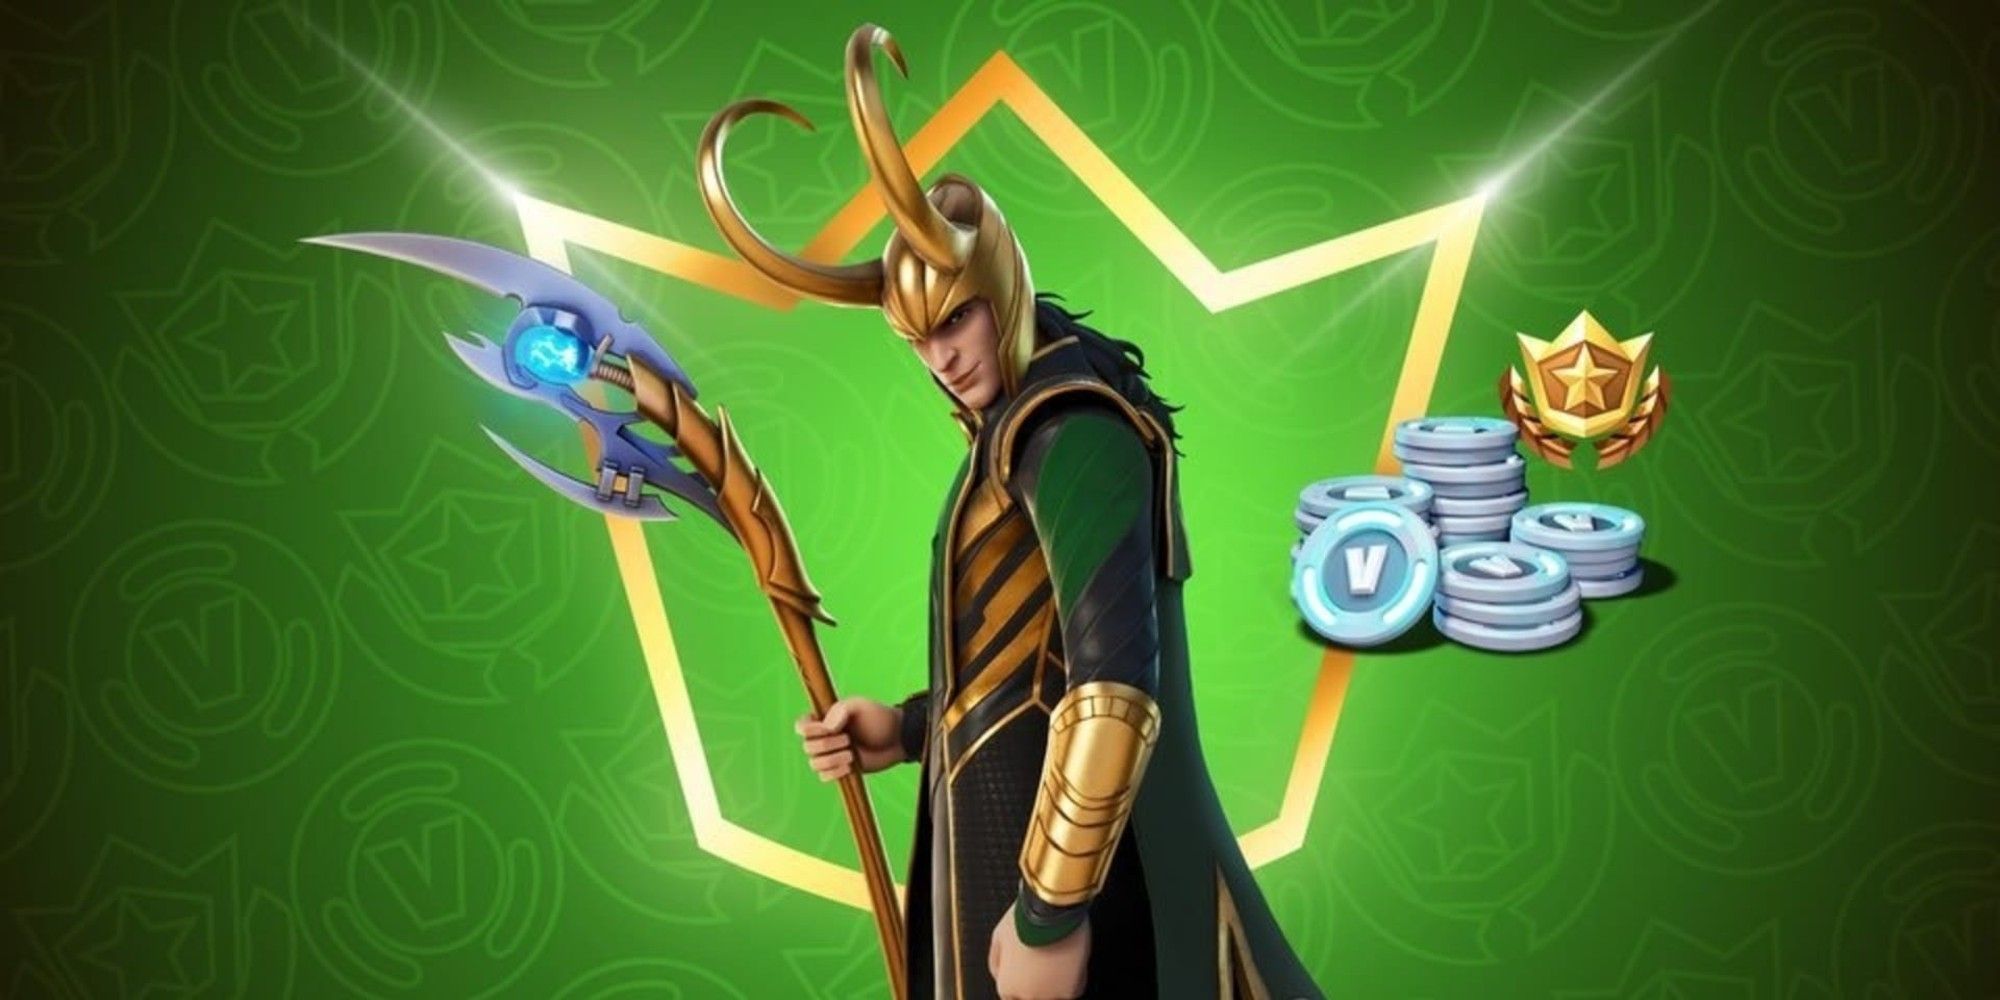 How to Unlock The Loki Skin in Fortnite